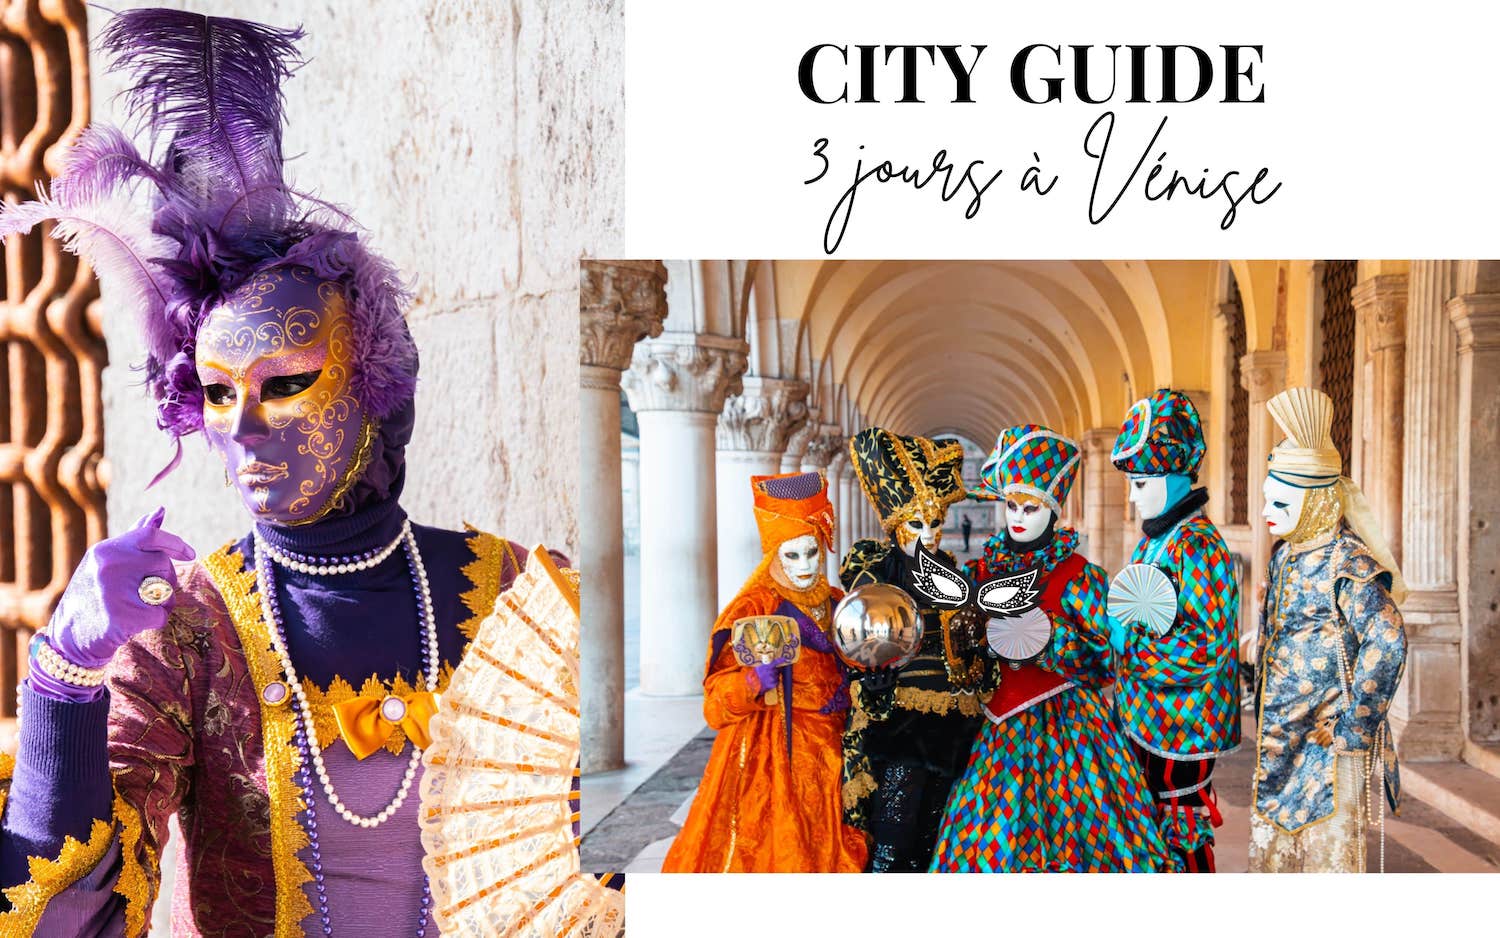 City guide 3 jours pendant le carnaval de Venise en Italie - HappinessCoco.com blog mode beauté voyage et lifestyle